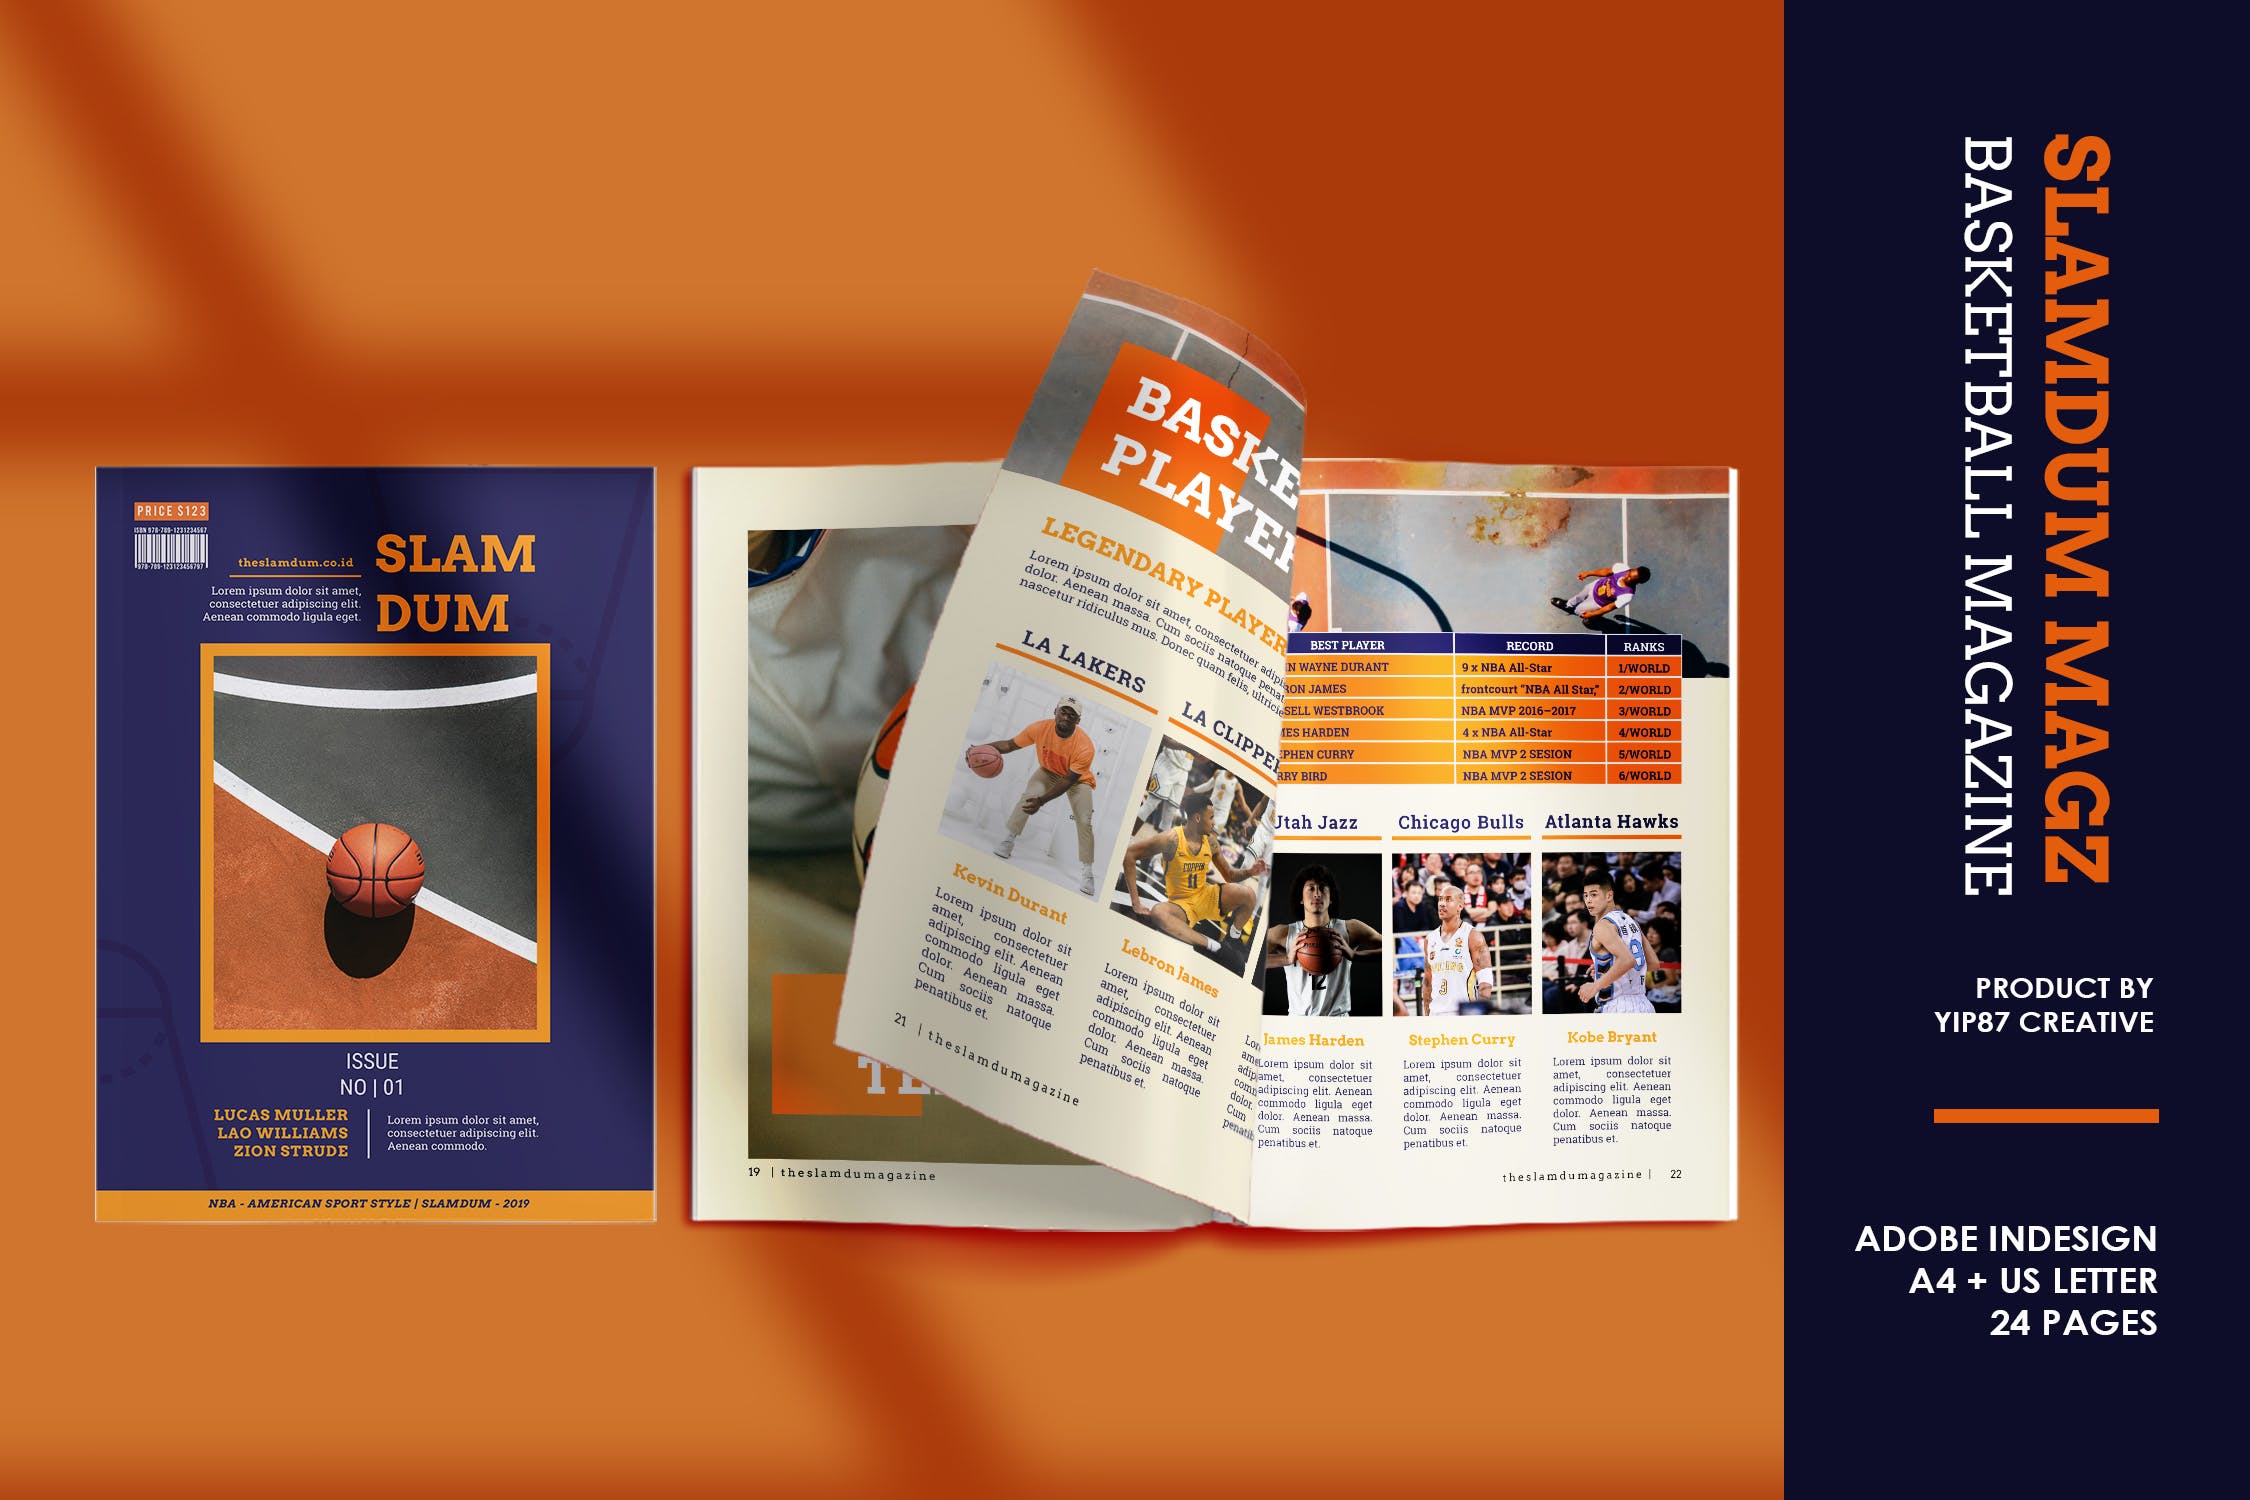 体育运动主题蚂蚁素材精选杂志设计InDesign模板 Slamdum –  Sport Magazine Template插图